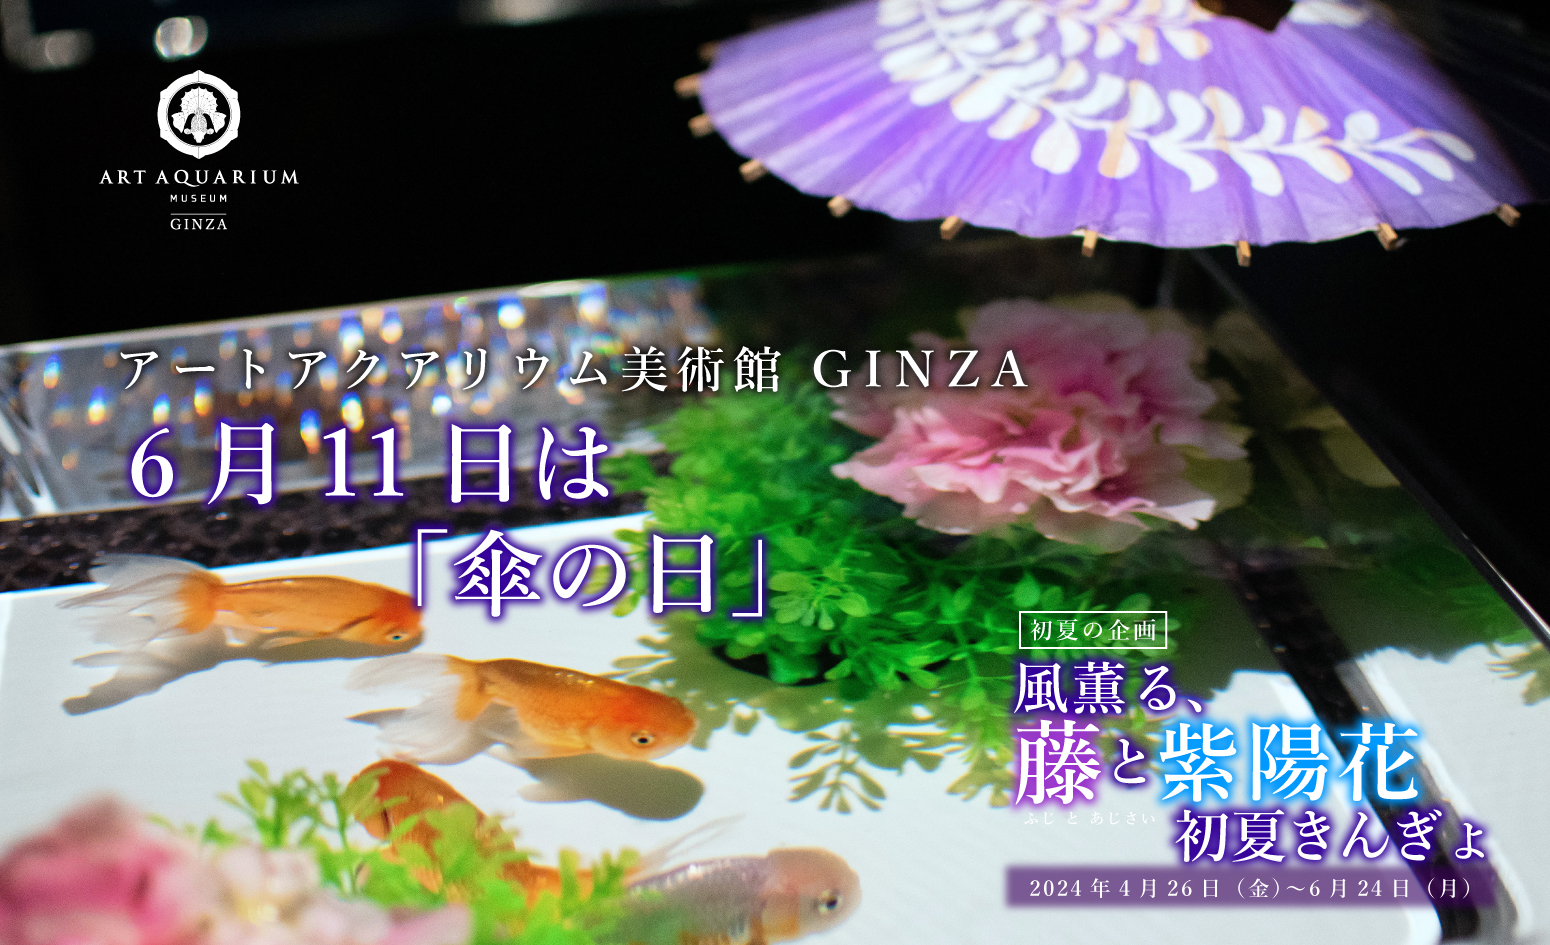 雨の日も金魚アート鑑賞を楽しむ アートアクアリウム美術館 GINZA 「傘の日」演出 金魚が和傘で雨宿り⁈  6月8日（土）～6月24日（月）期間限定演出 - アートアクアリウム